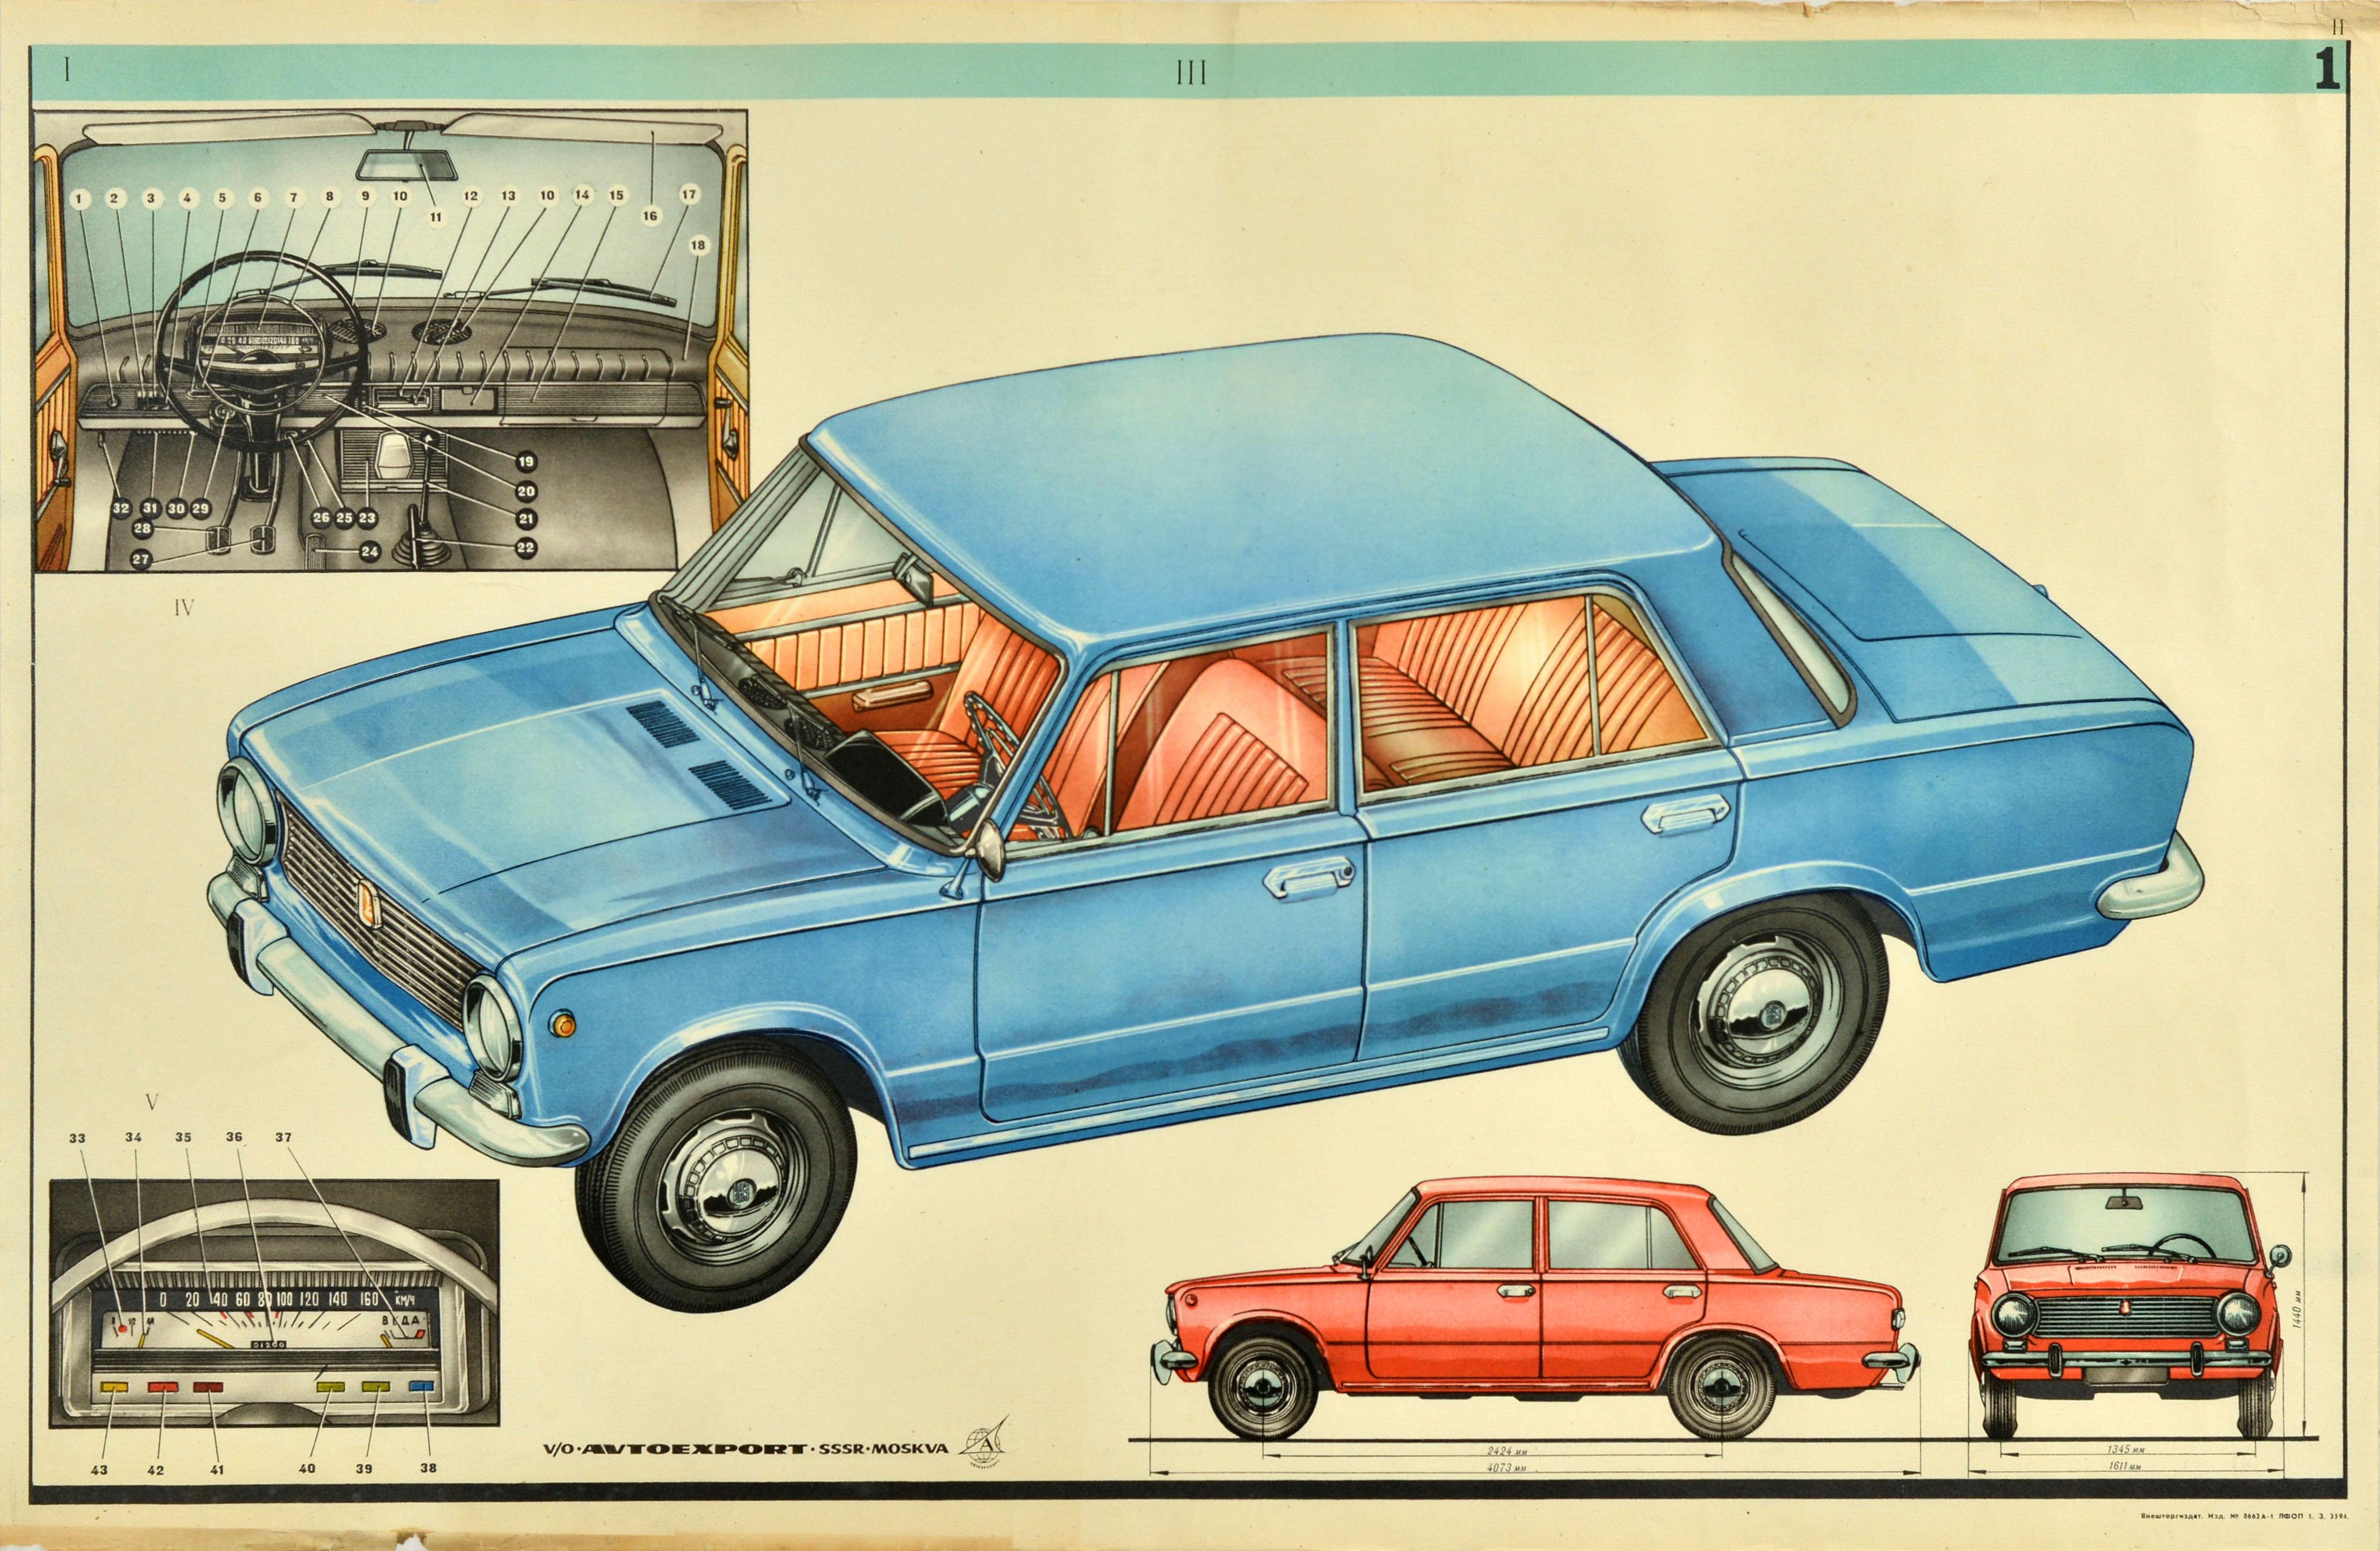 Print Unknown - Affiche publicitaire originale de voitures soviétiques Lada Car AvtoVAZ URSS Moscou